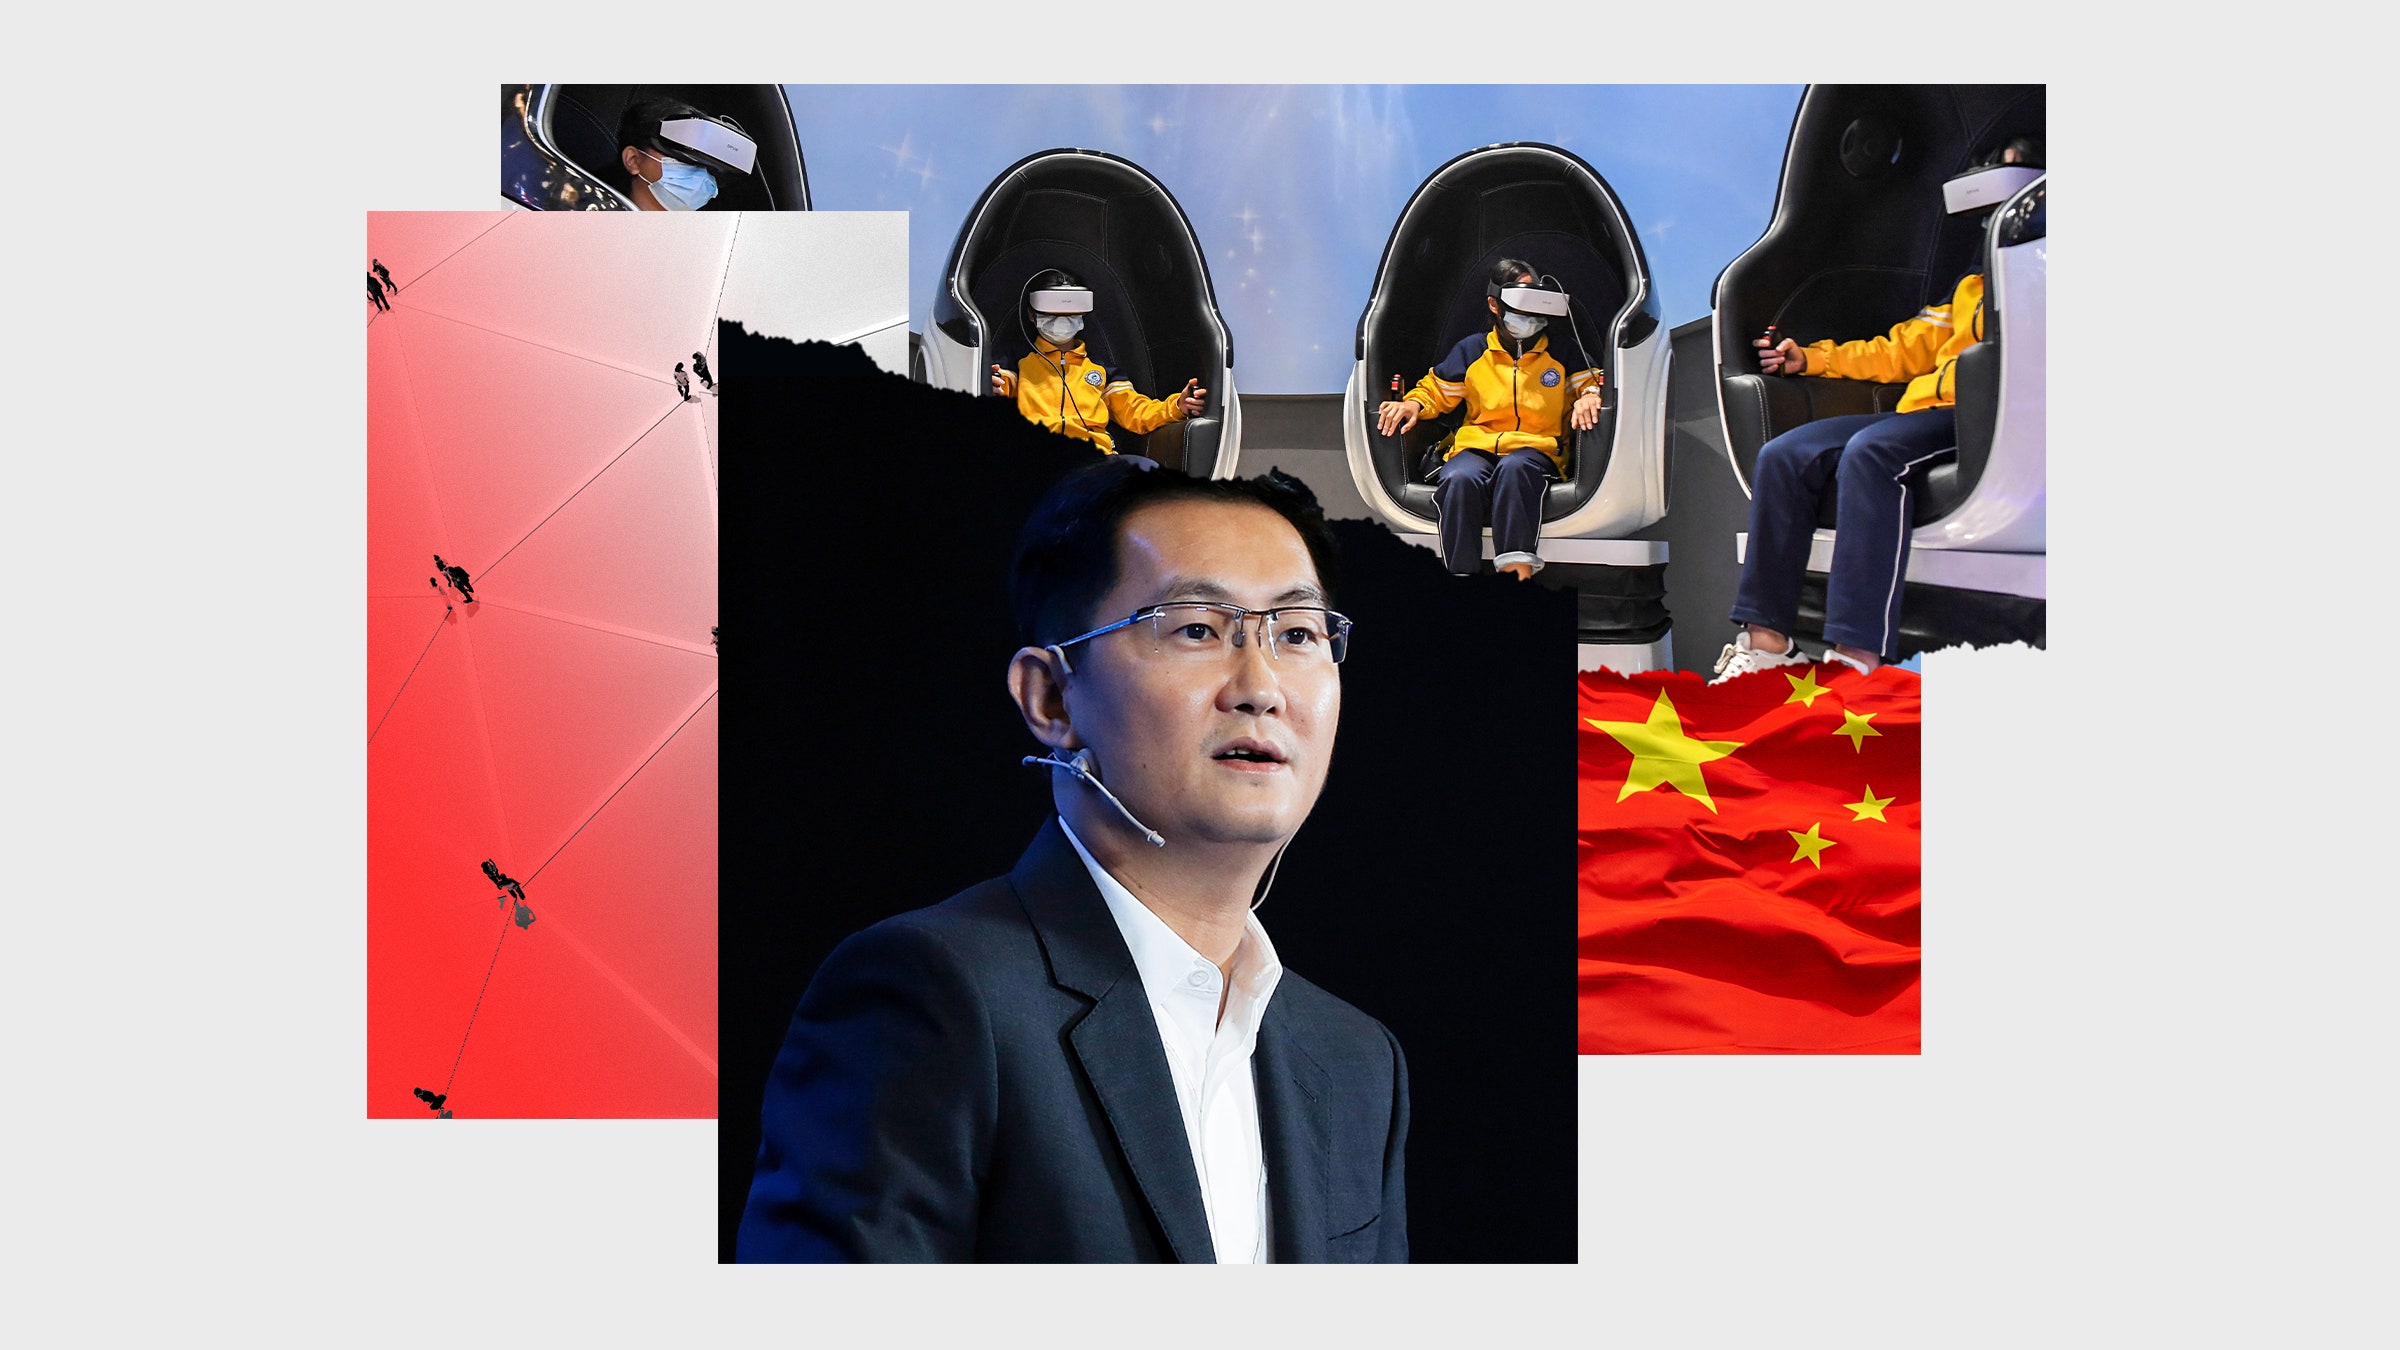 Colagem de fotos das crianças Pony Ma Huateng usando óculos de realidade virtual com bandeira chinesa